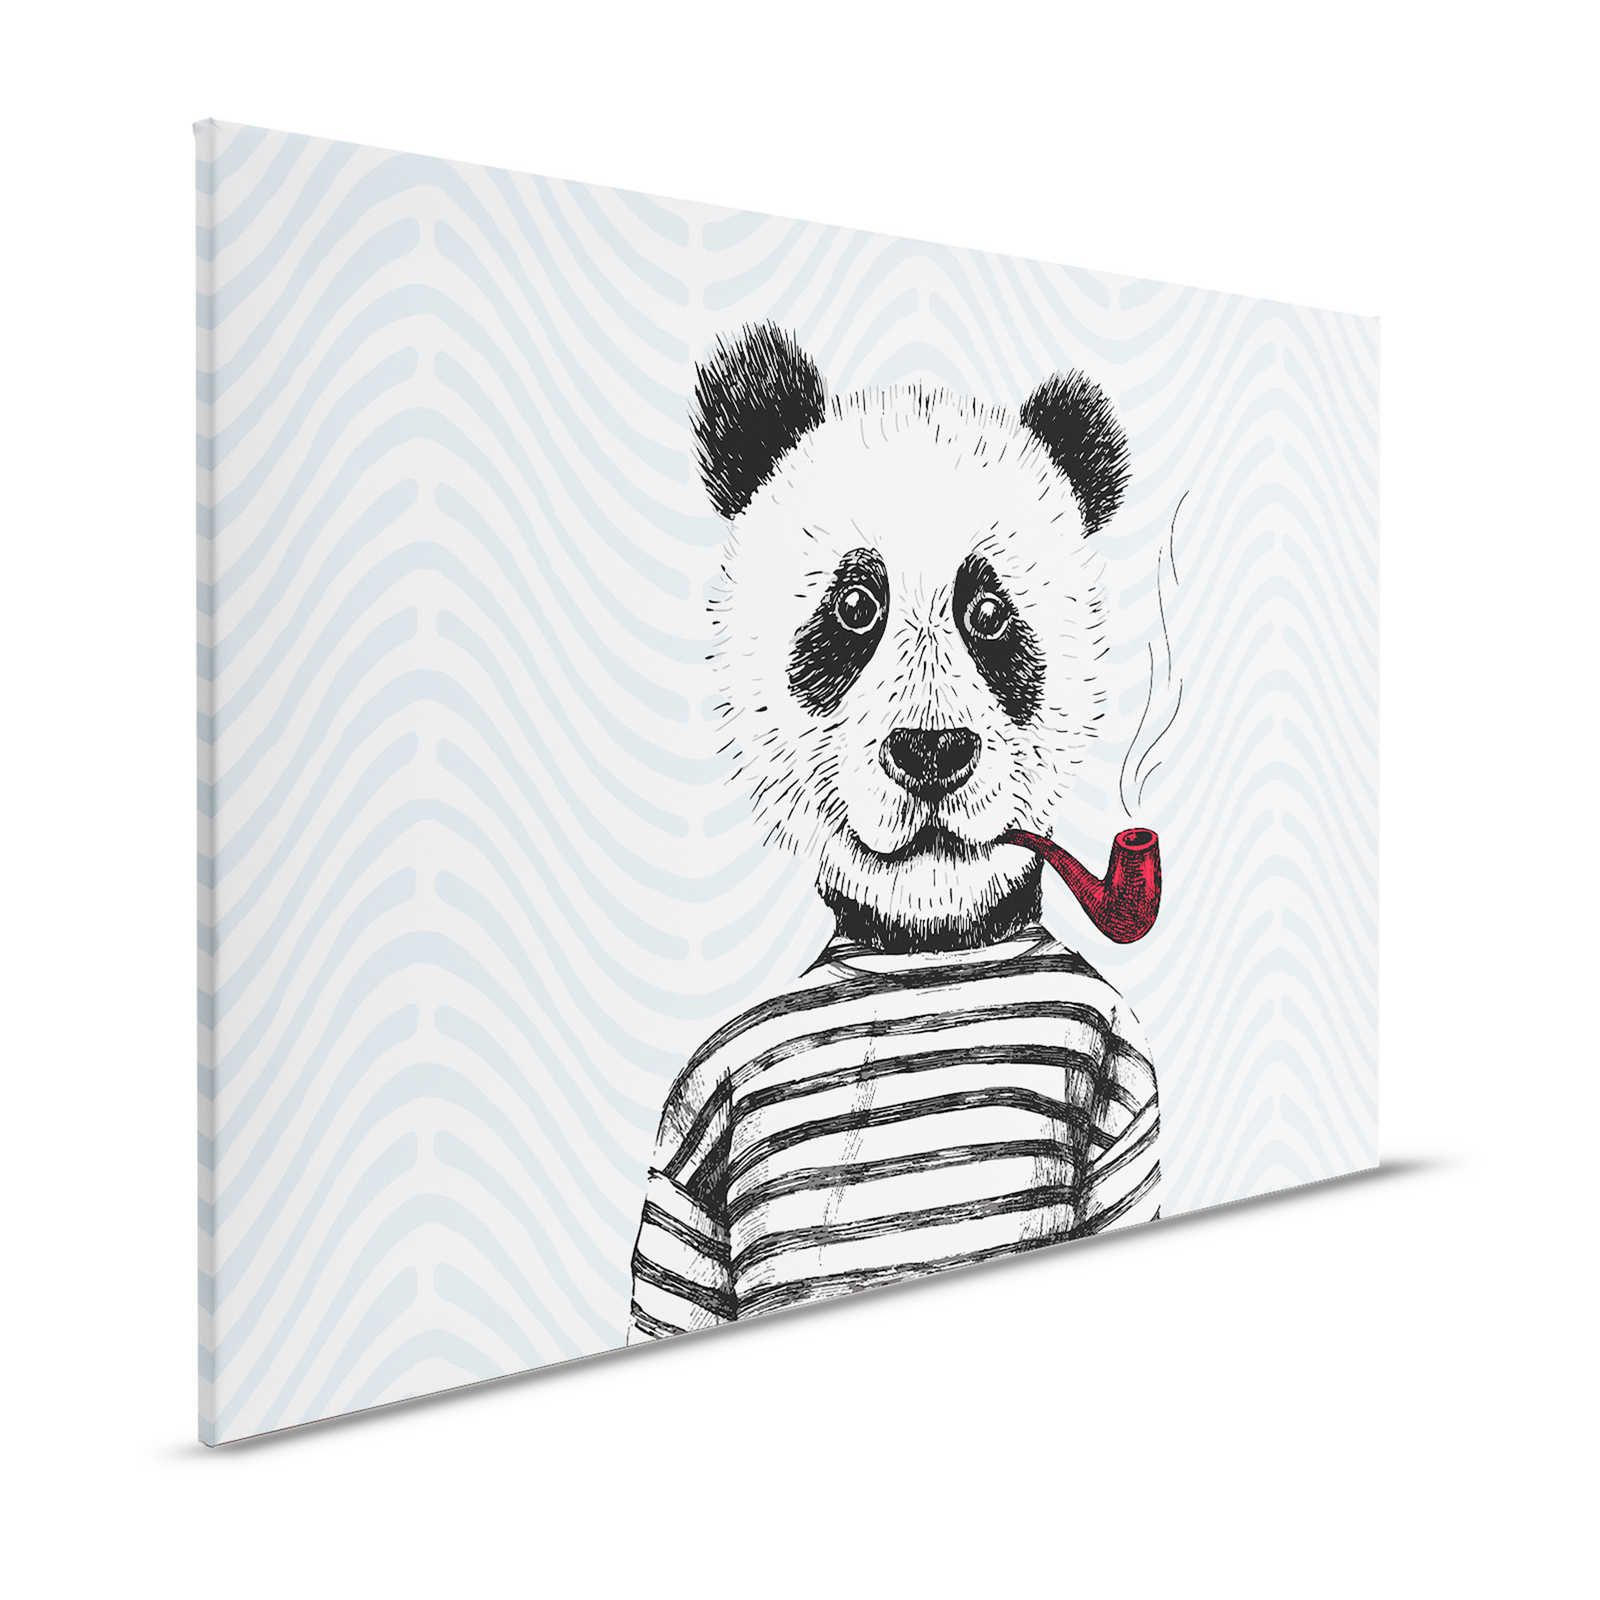 Pintura en lienzo Diseño cómico para habitación infantil Motivo panda - 1,20 m x 0,80 m
